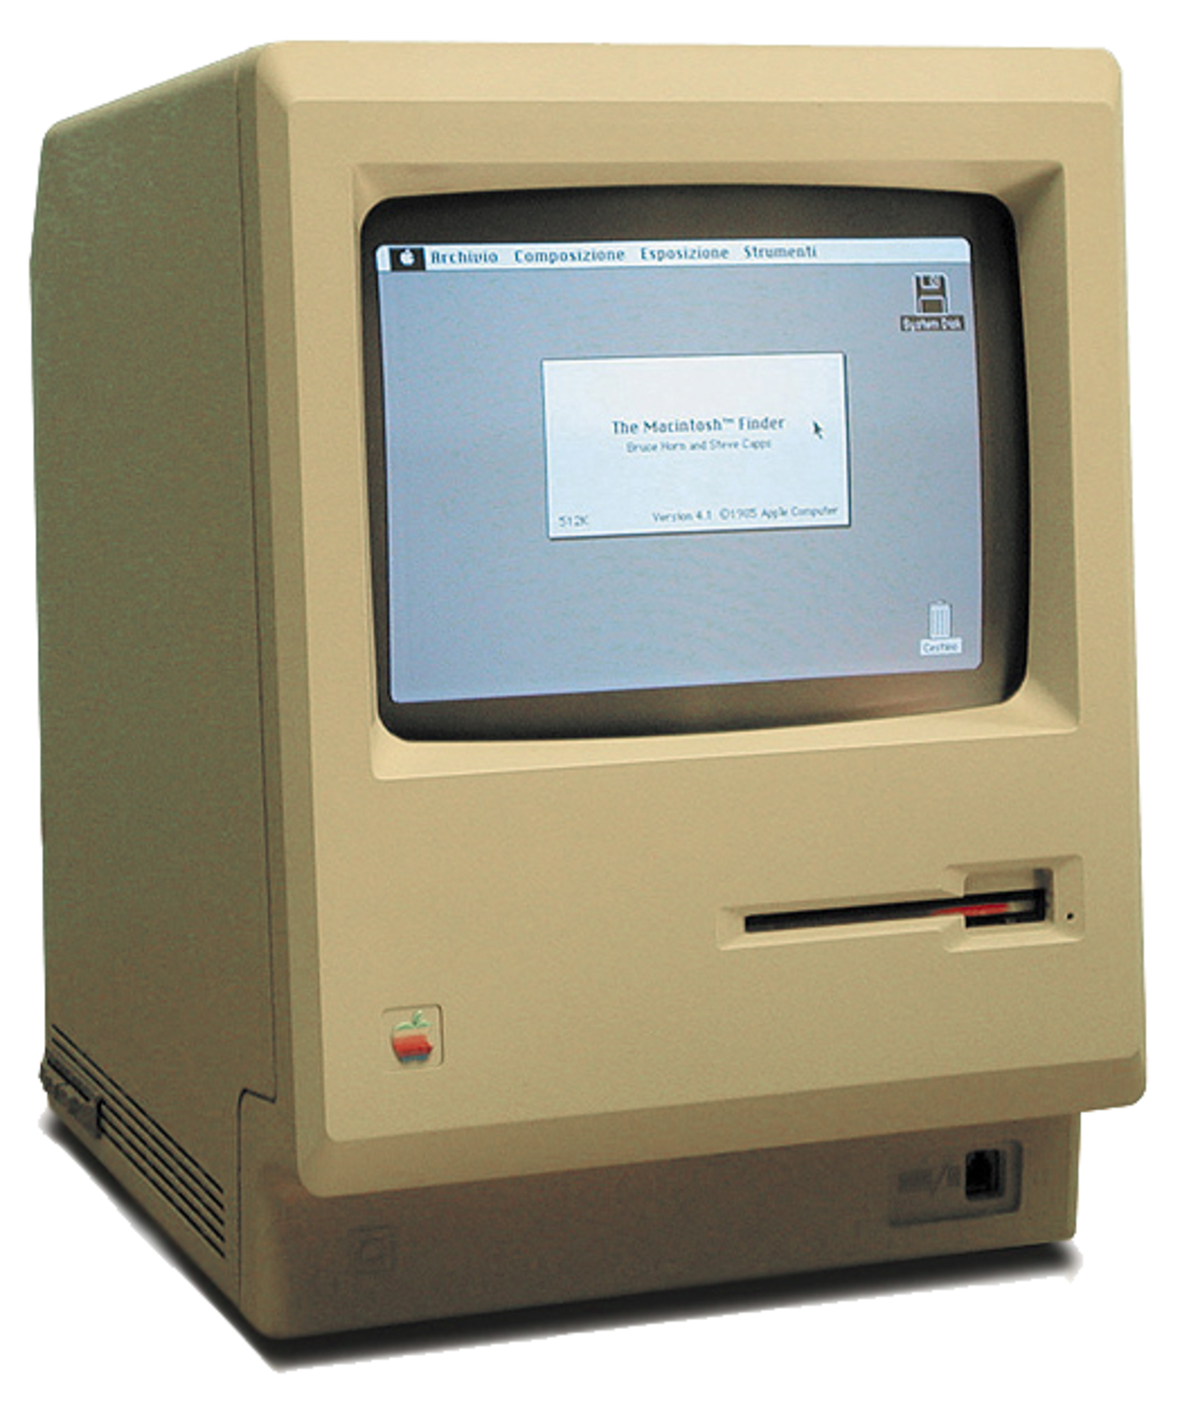 Un ordinateur beige en forme de pavé vertical, affichant quelques icônes.